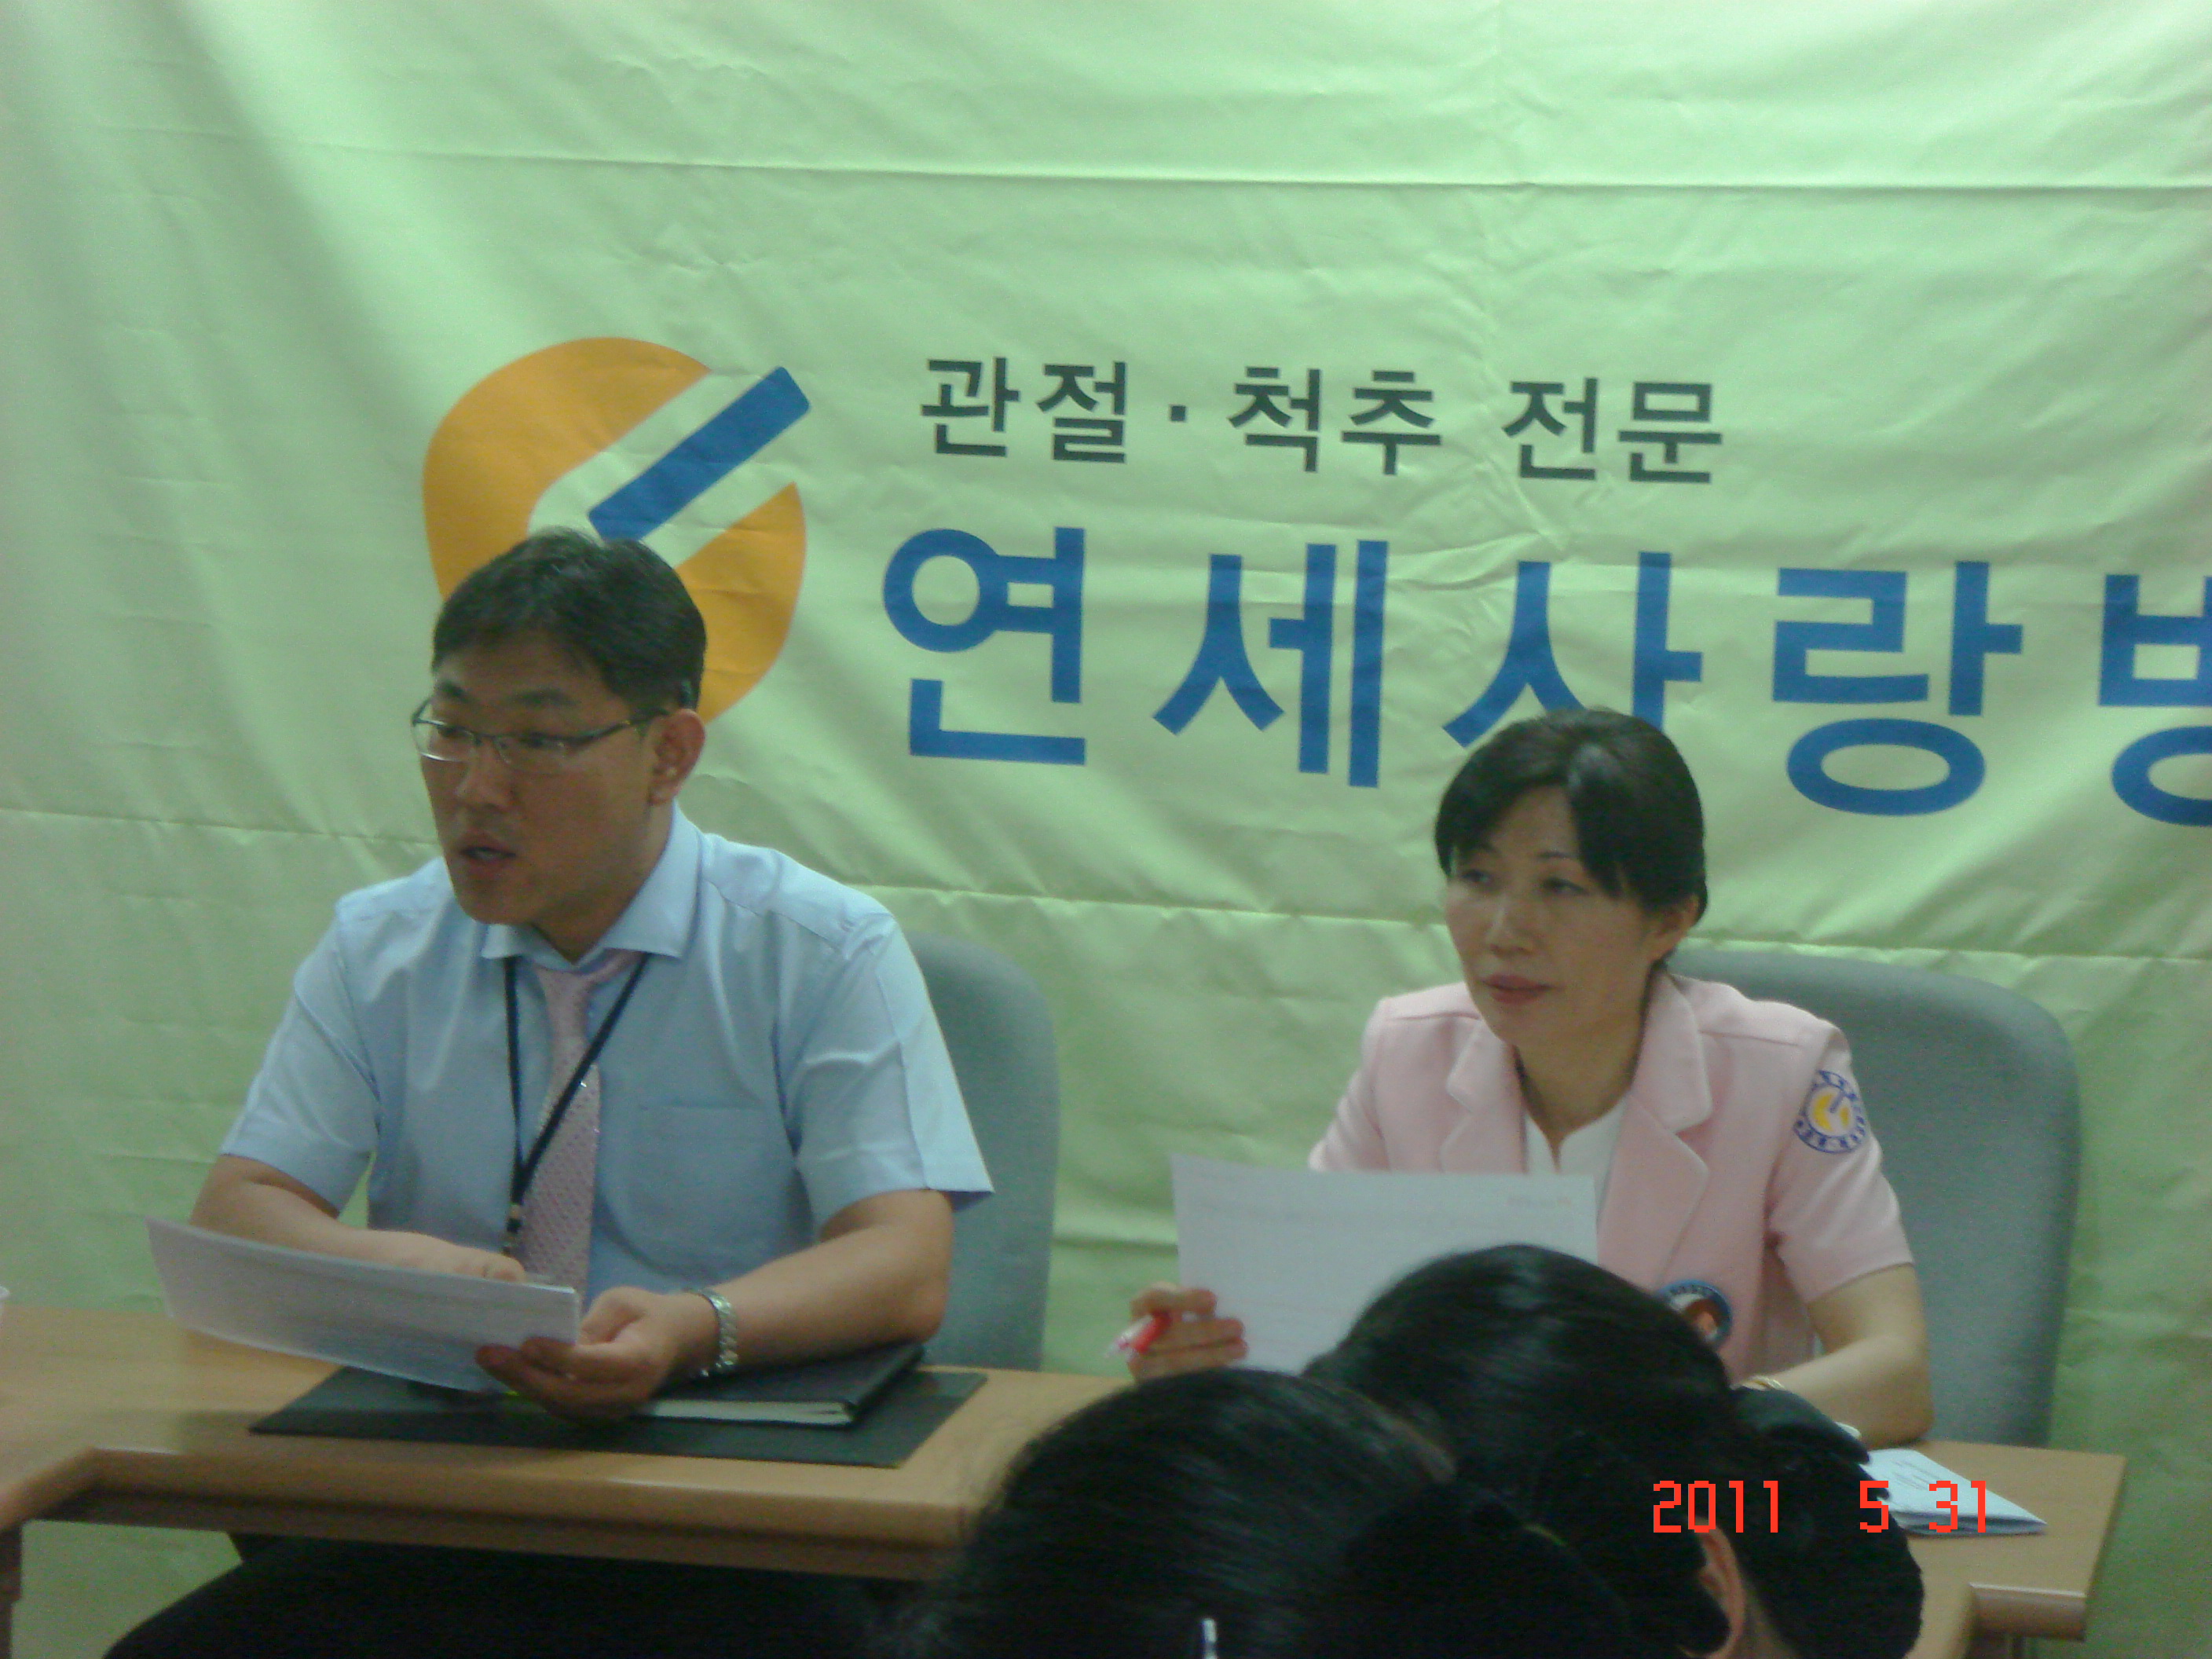 [강북점] 2011년 5월 31일 - 실무진 회의 개최 게시글의 5번째 첨부파일입니다.